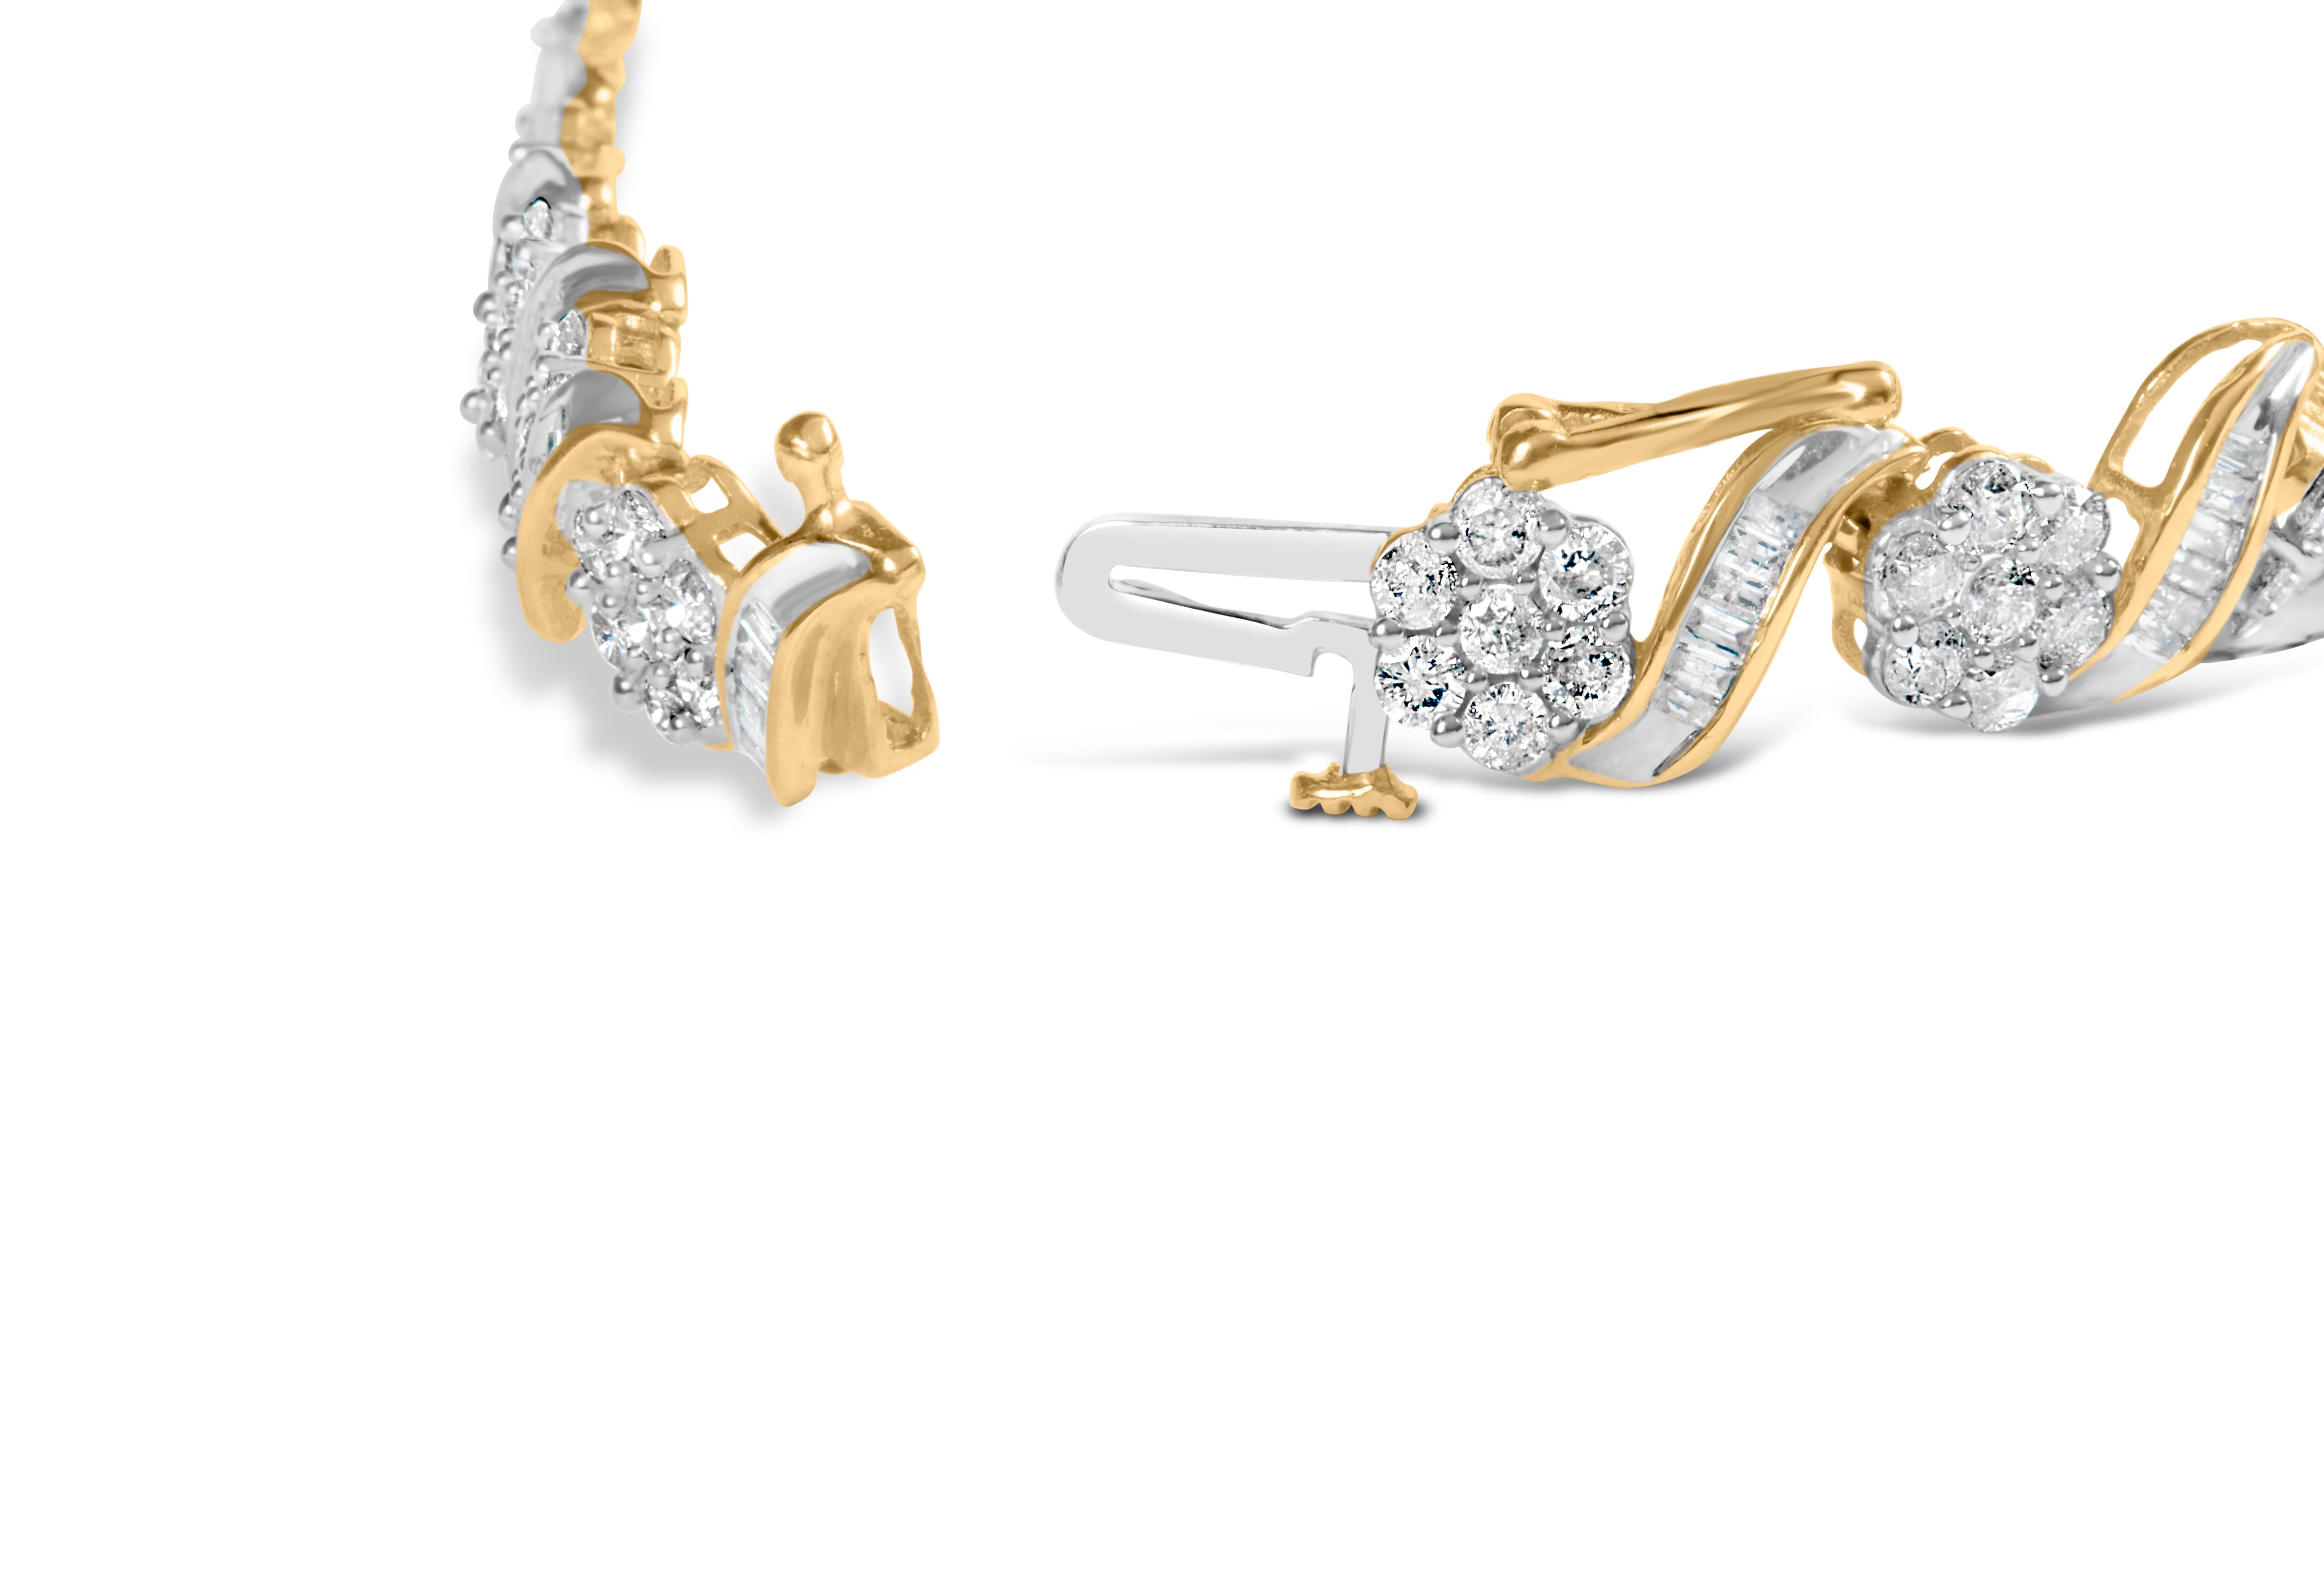 Gönnen Sie sich die himmlische Schönheit unseres 10k Yellow Gold Diamond Floral Link Armbands. Dieses exquisite, mit äußerster Präzision gefertigte Stück ist die perfekte Verbindung von Eleganz und Raffinesse. Dieses Armband ist mit 234 Diamanten